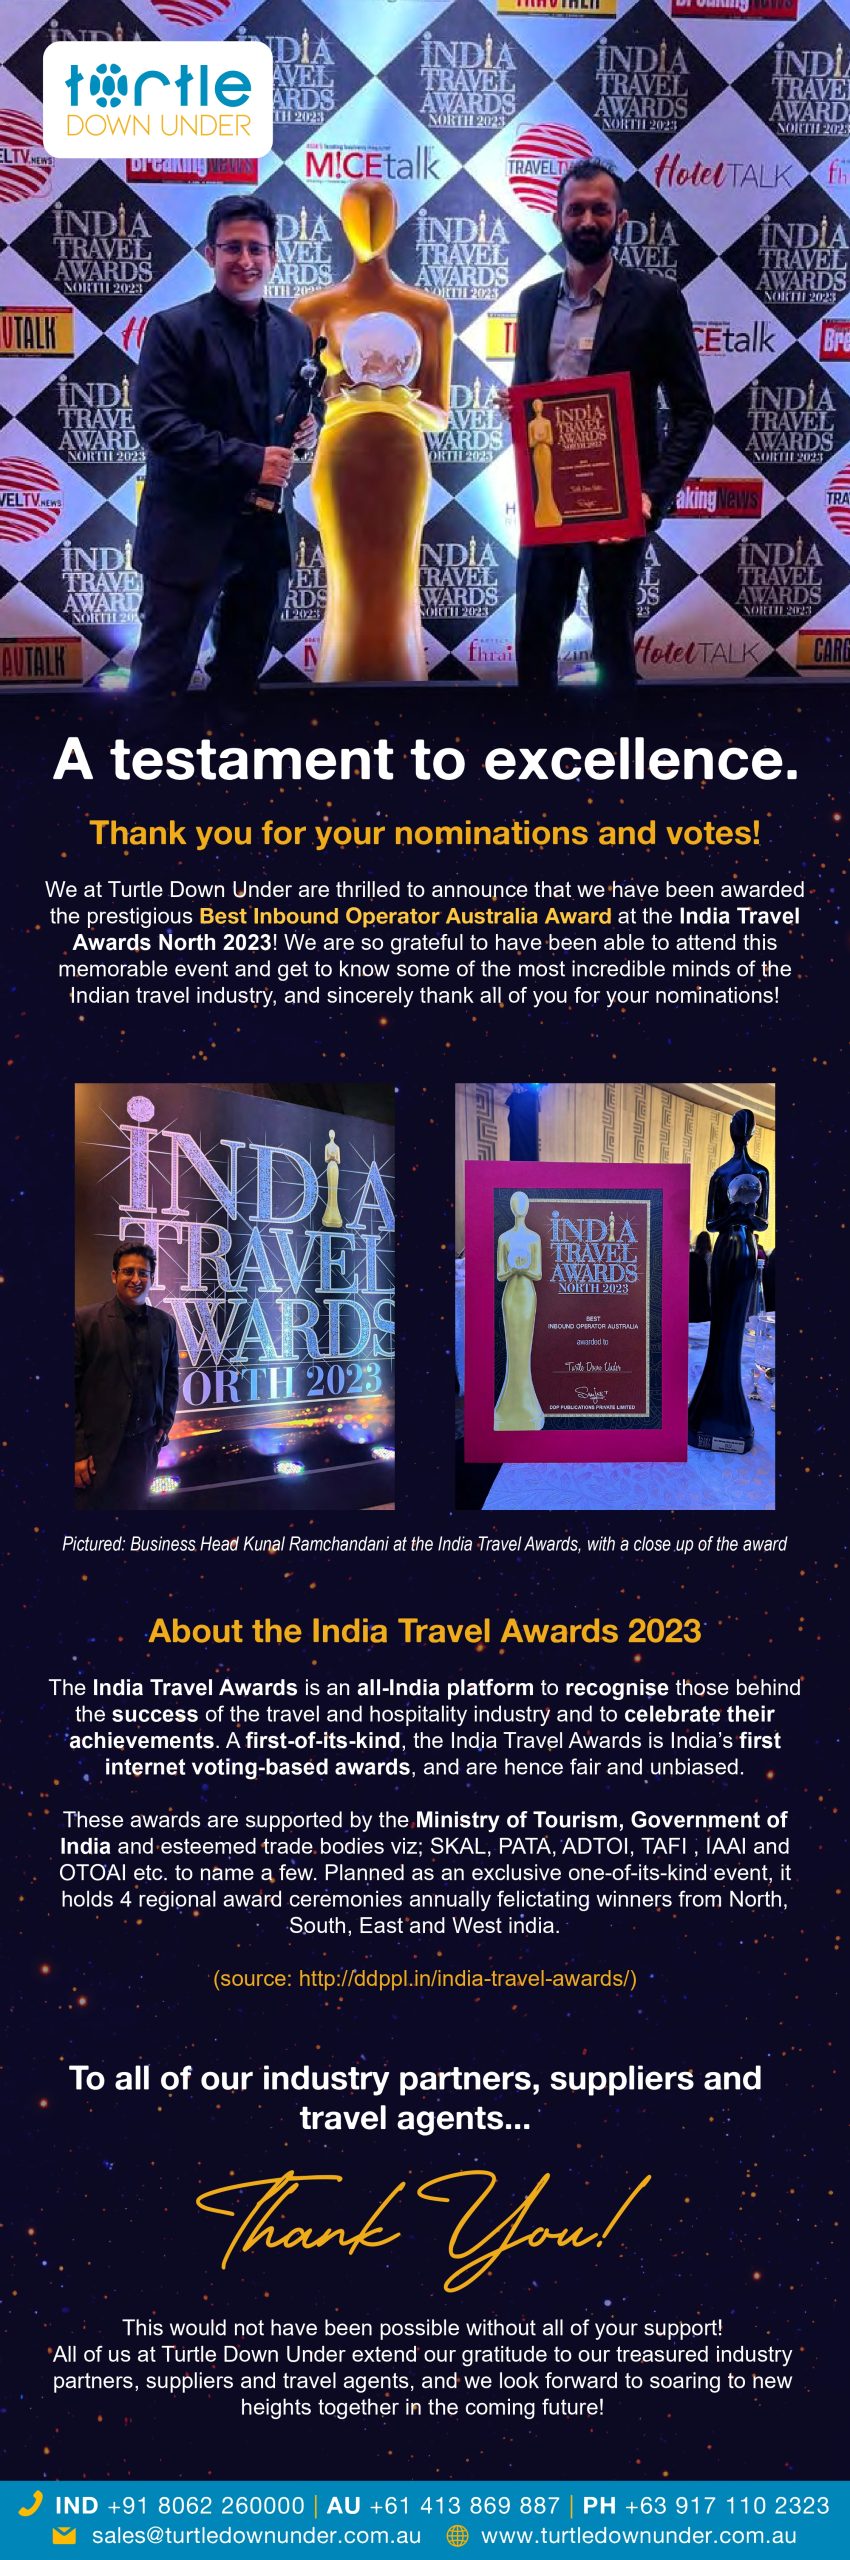 TDU at India Travel Awards_page-0001 (1)